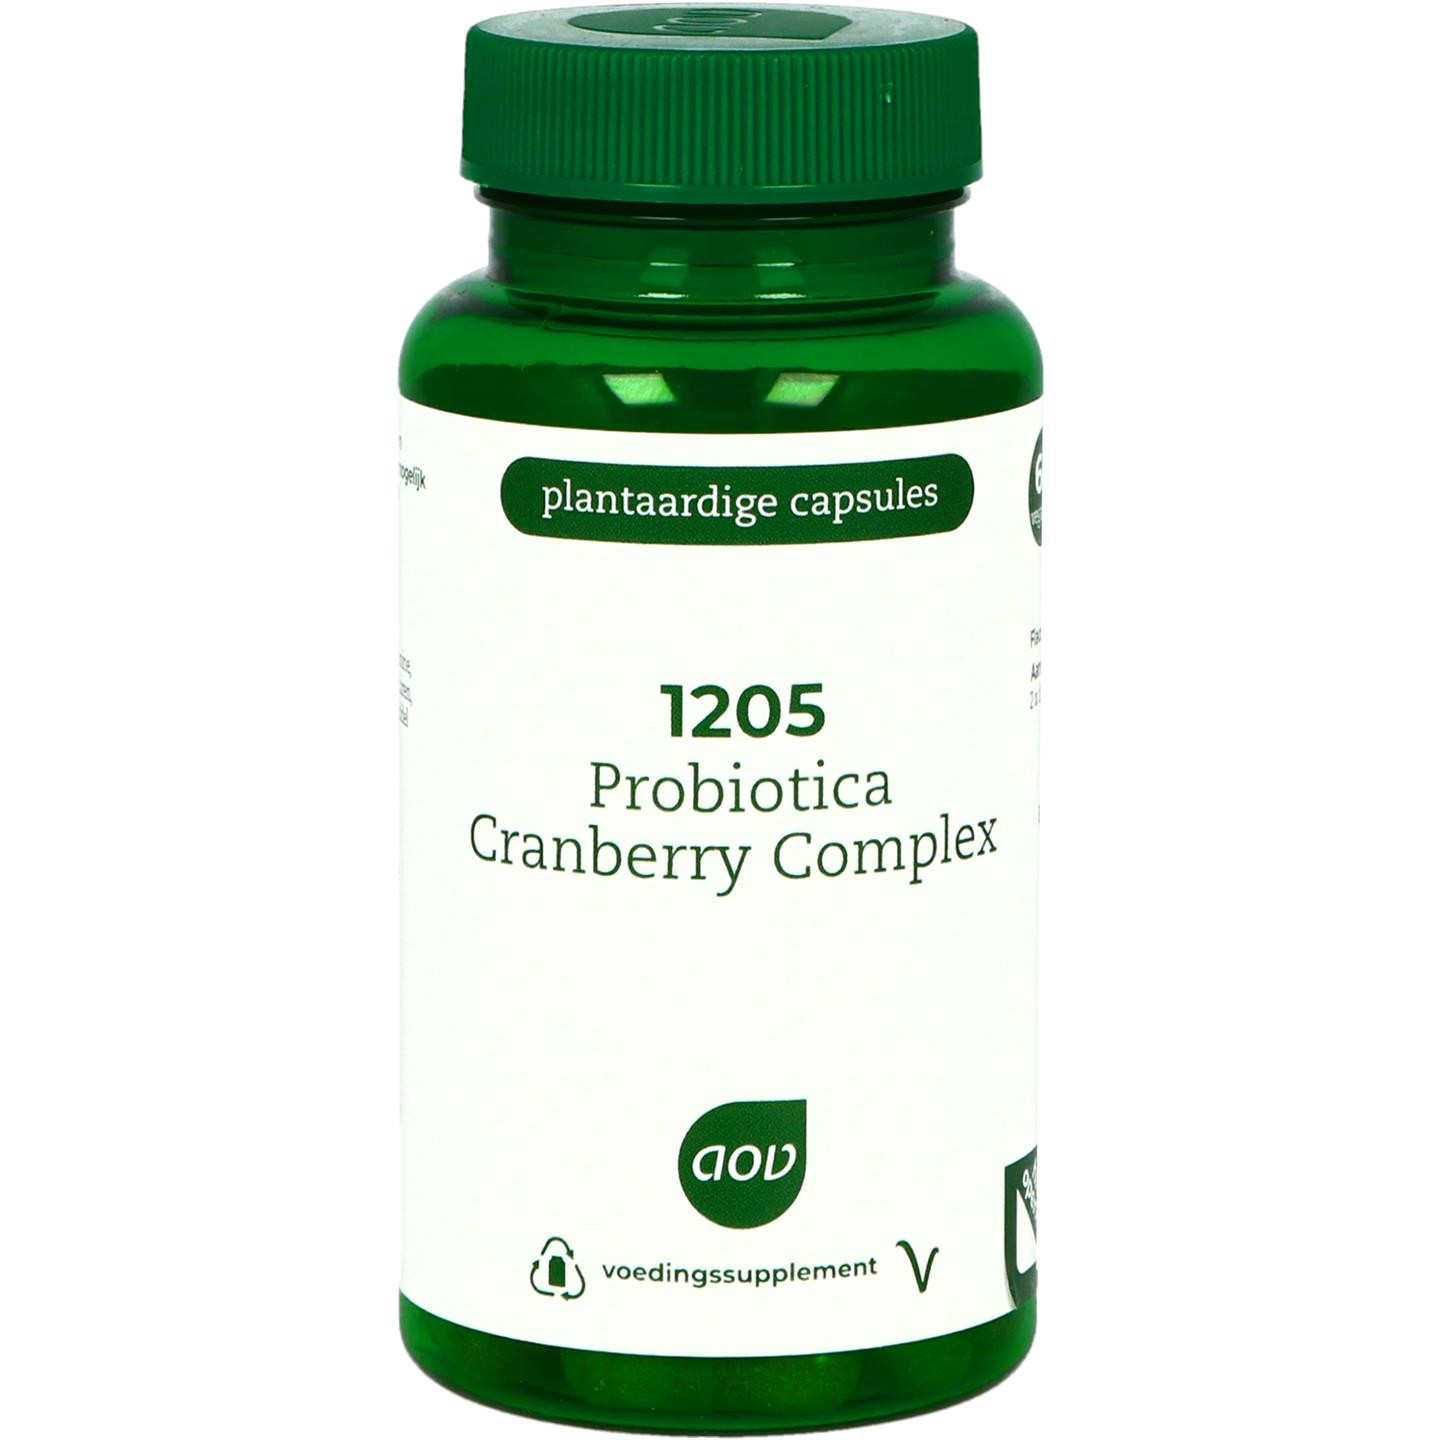 1205 Probiotica Cranberry complex